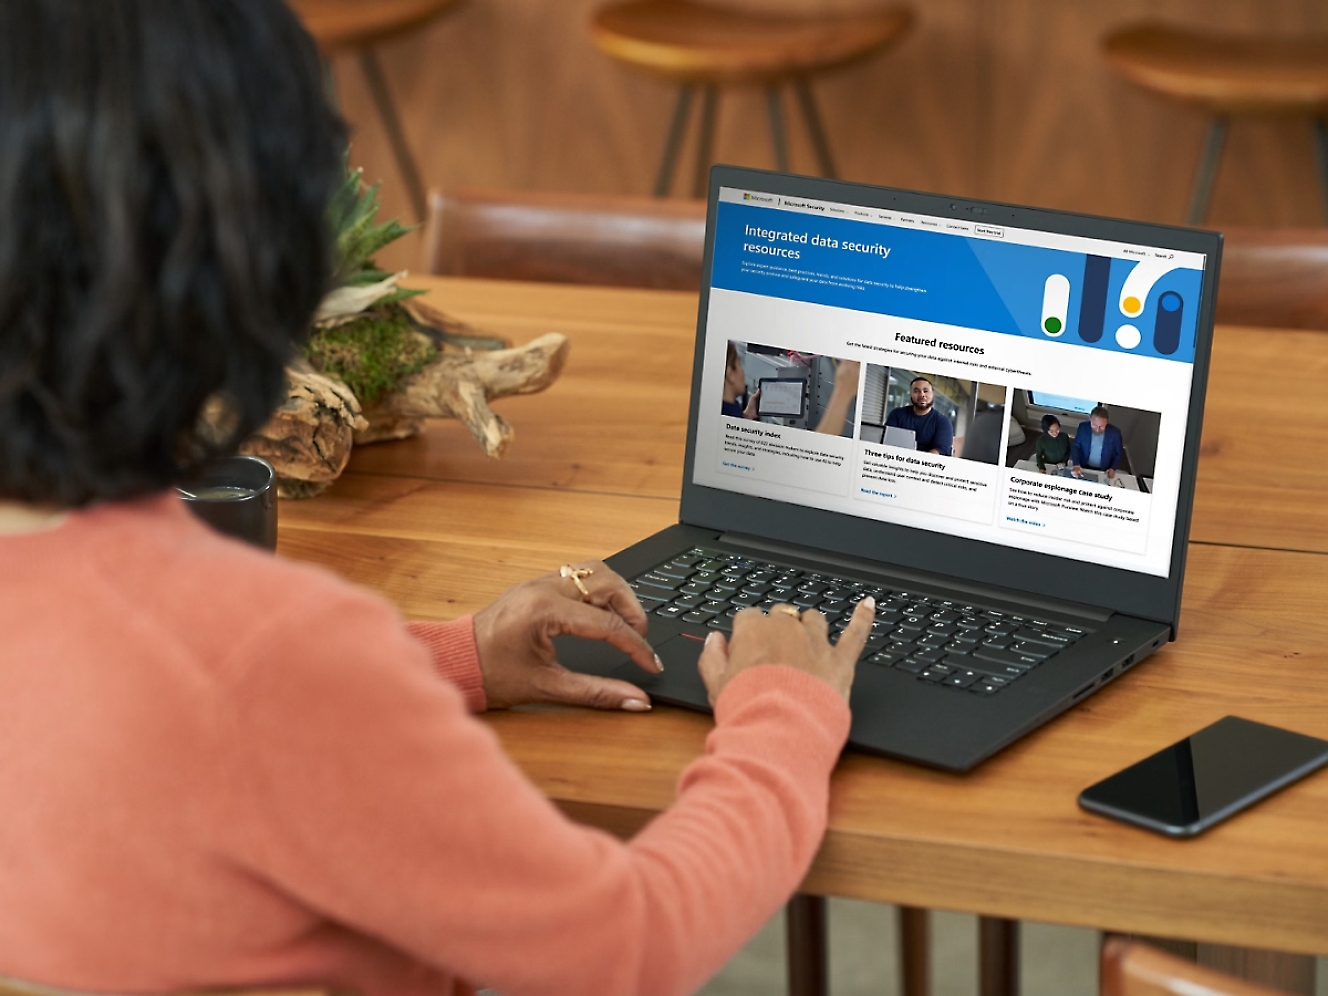 Vrouw in een oranje trui aan een houten tafel met daarop een laptop waarop een website over gegevensbeveiliging te zien is op het scherm